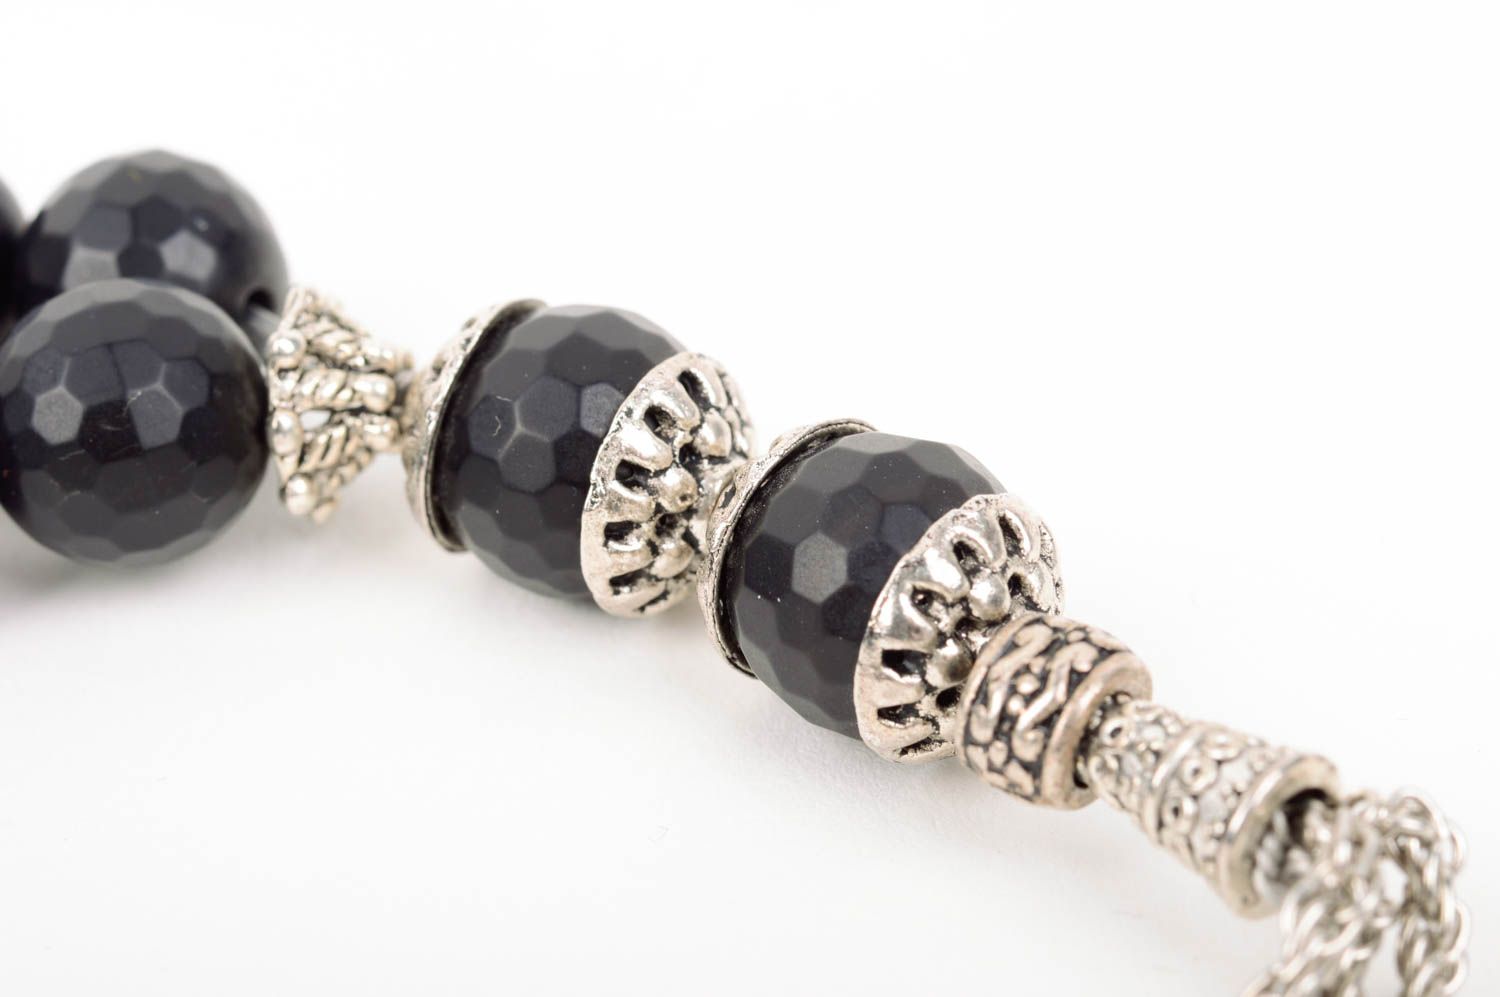 Rosary beads handmade prayer rope church accessories spiritual gifts worry beads photo 5